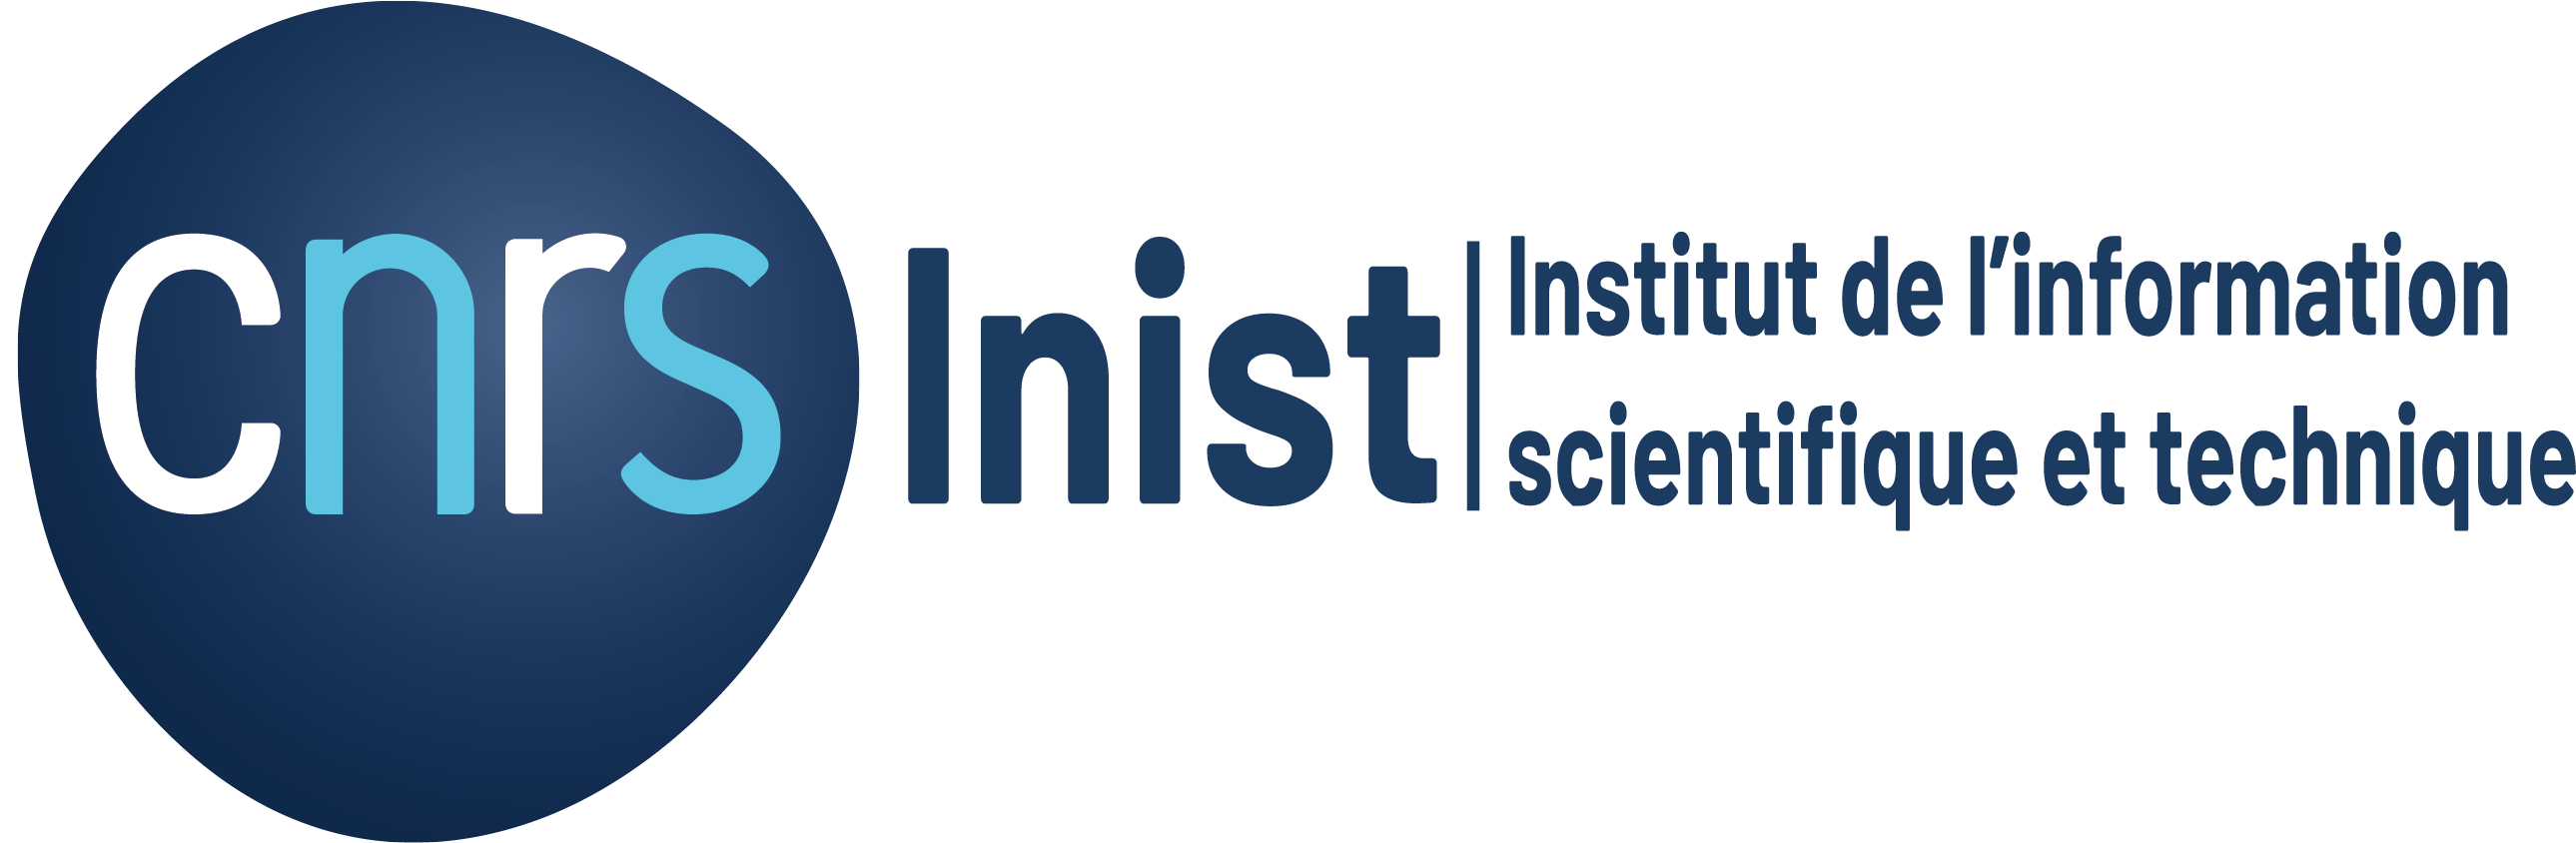 CNRS INIST Institut de l'information scientifique et technique